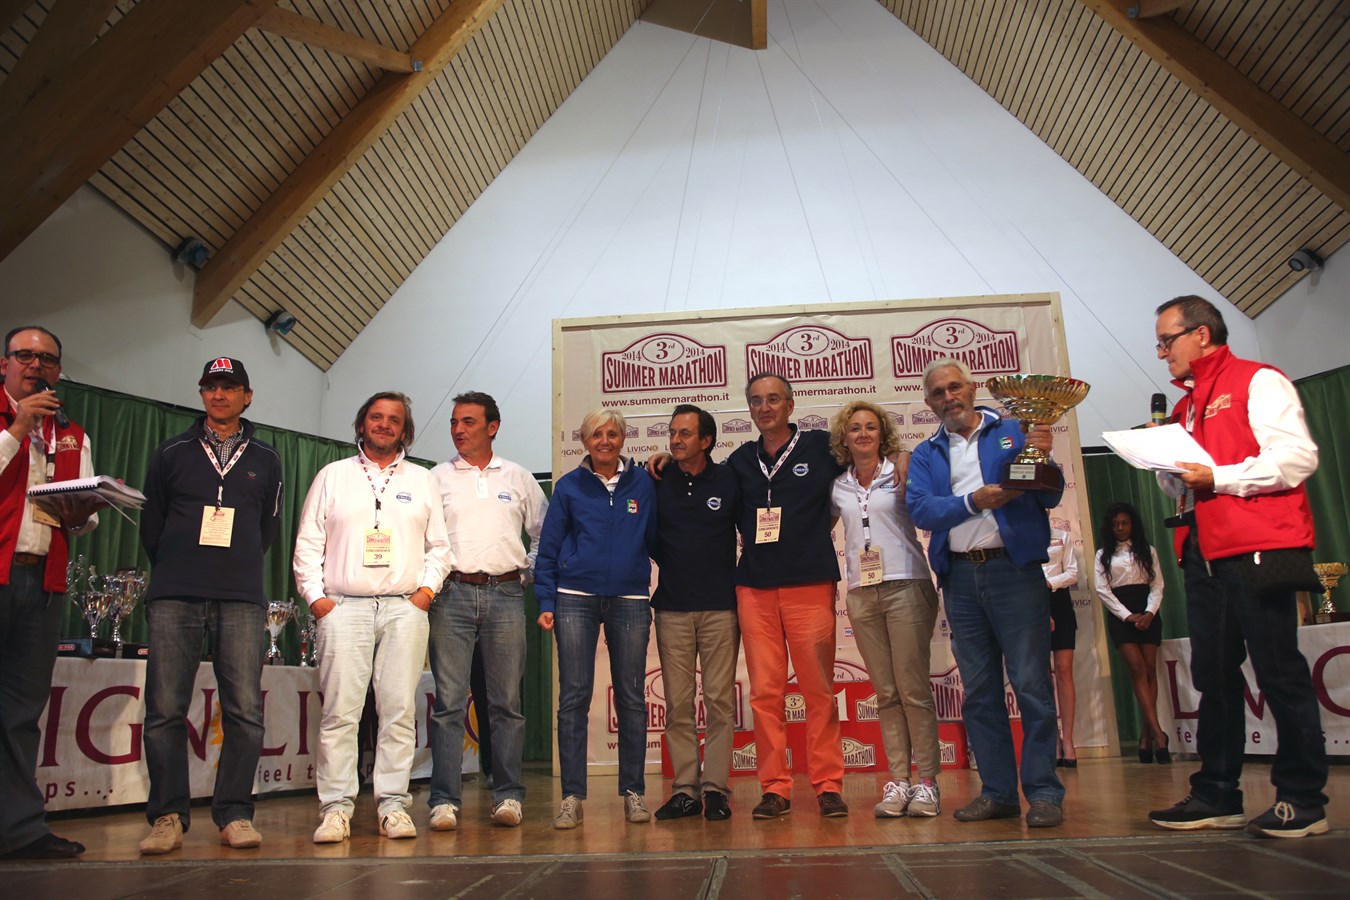 Volvo Heritage: Grande risultato della Scuderia Volvo alla Summer Marathon con il primo posto nella speciale classifica per Scuderie